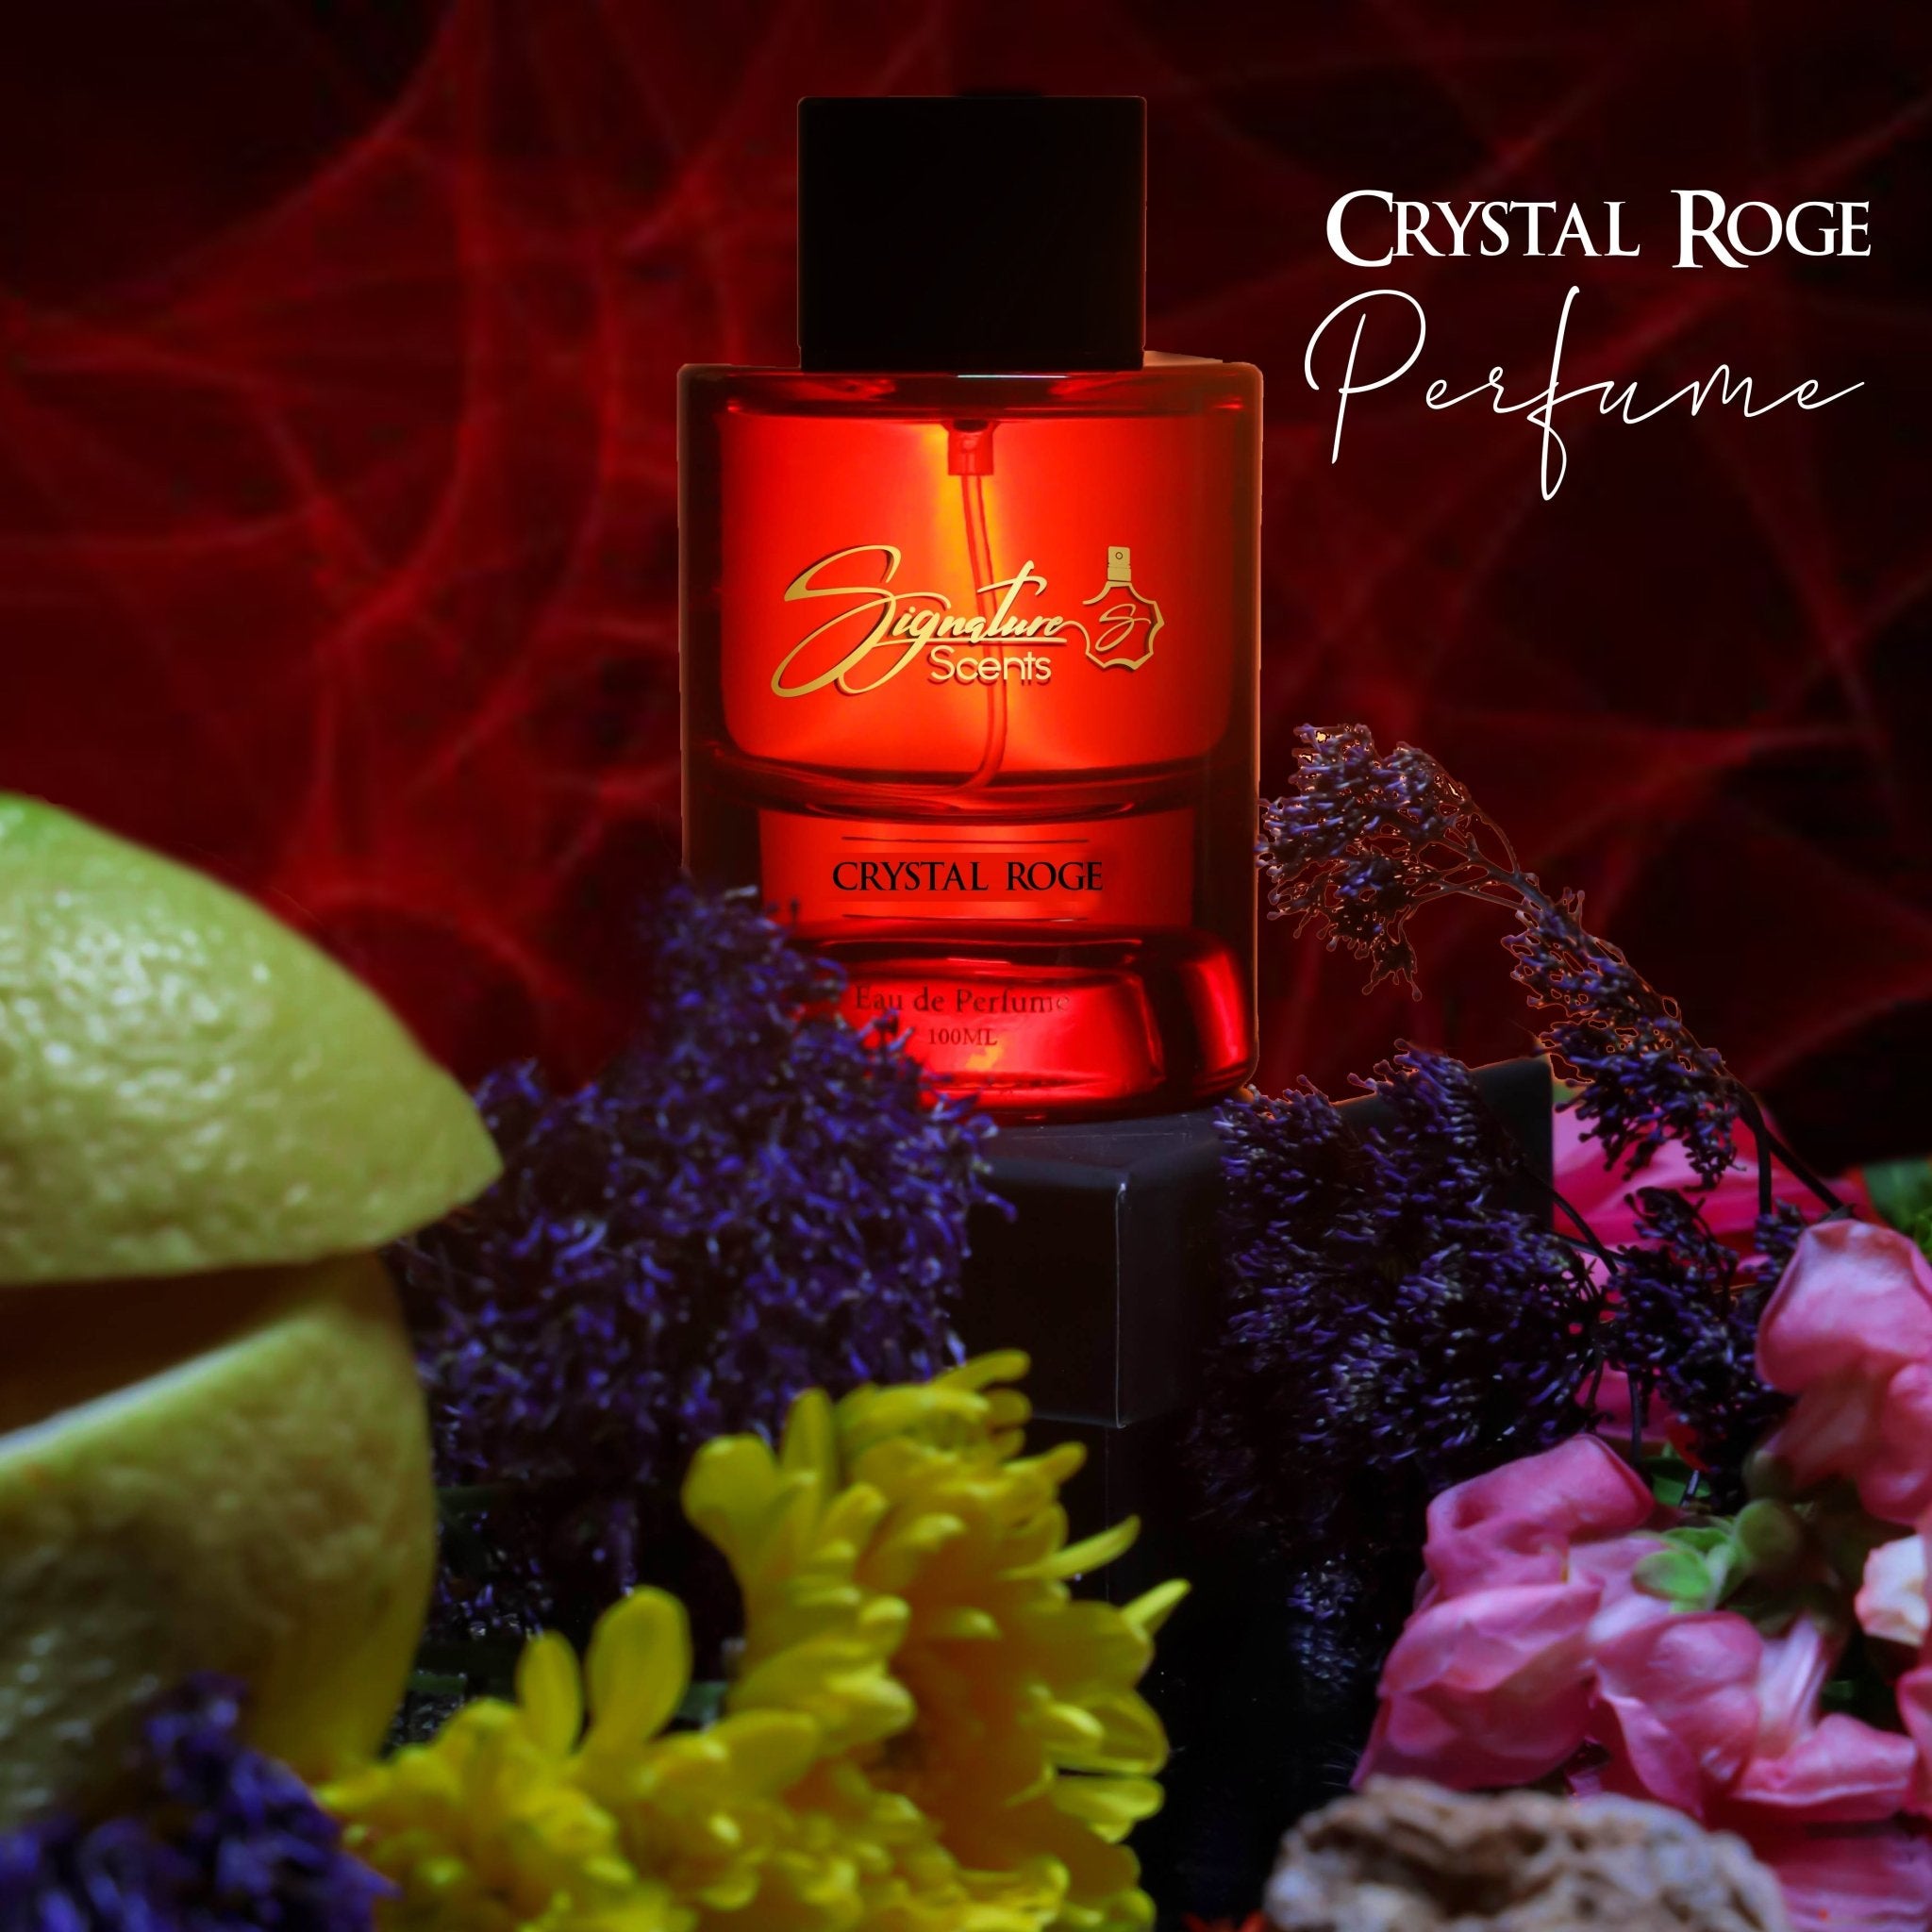 Signature Scents Crystal Roge Eau De Parfum 100ml - IZZAT DAOUK Lebanon